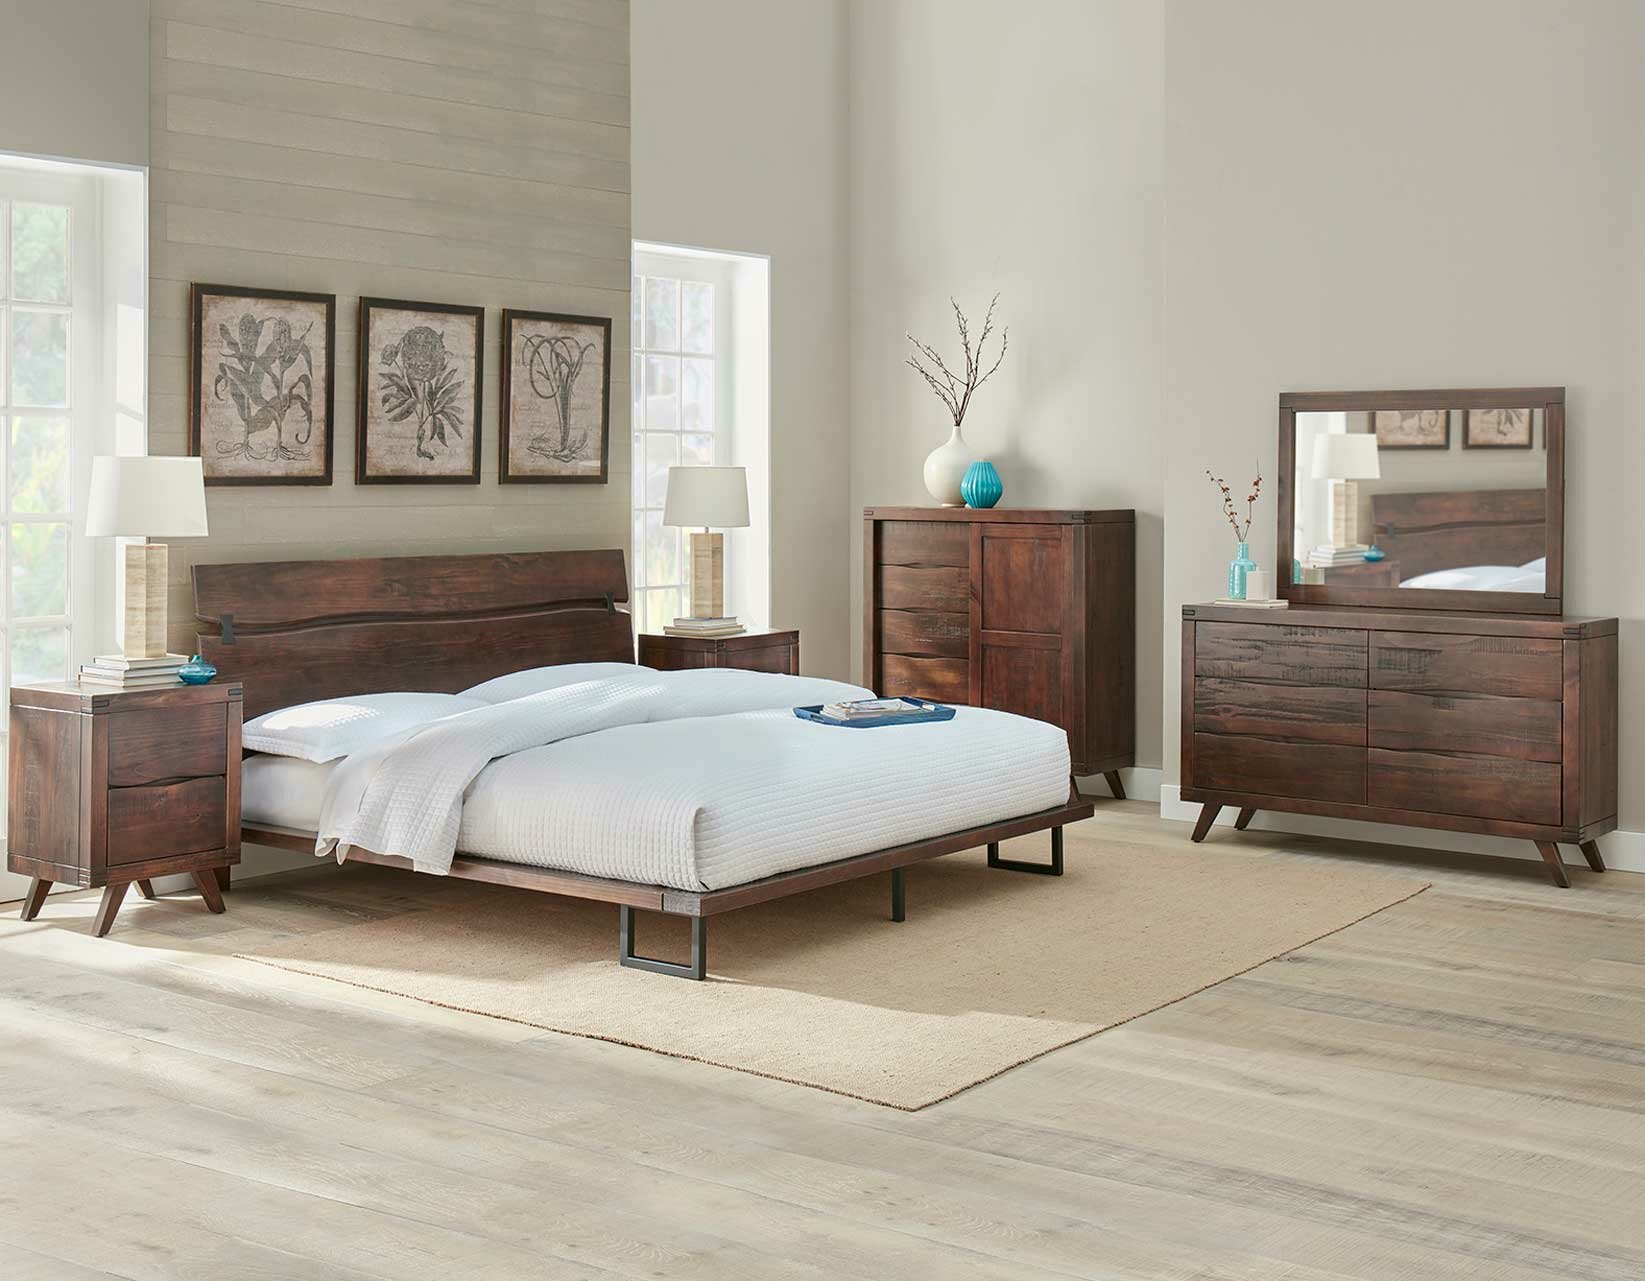 Modern Solid Wood Bedroom Furniture Set Buy Bedroom Furniture Set Modern Bedroom Sets Solid Wood Bedroom Sets Product On Alibaba Com